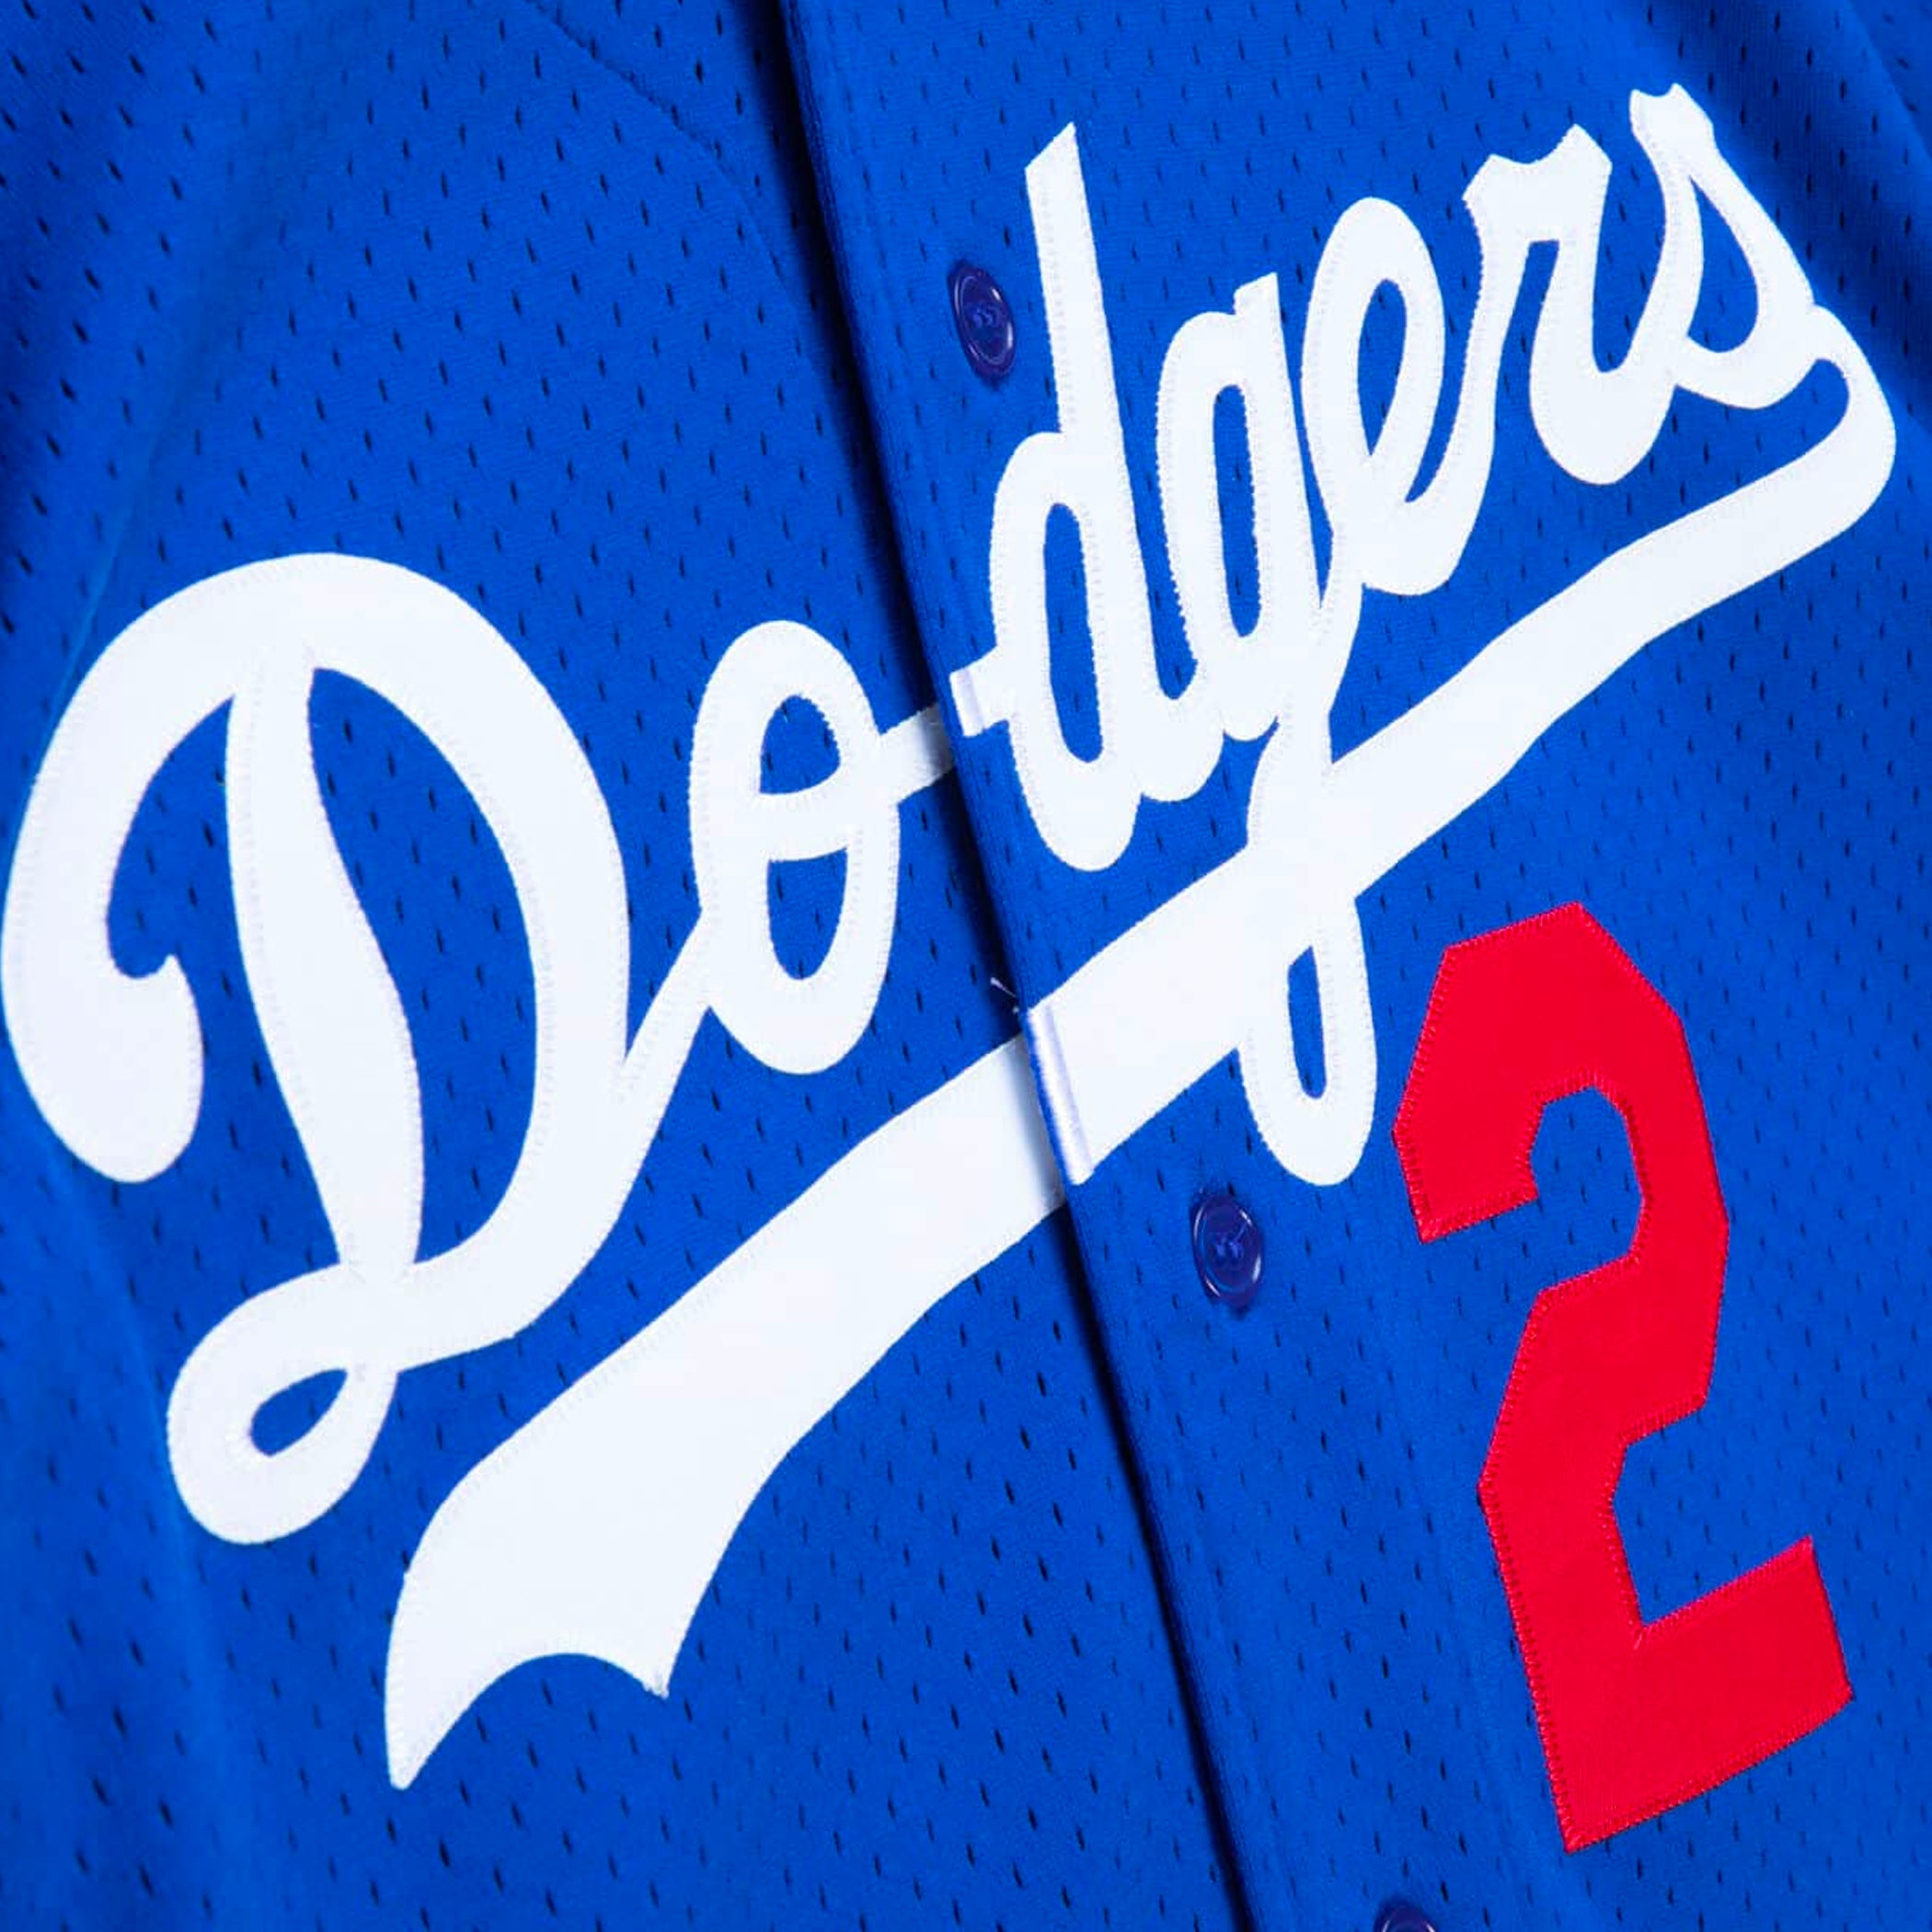 Los Angeles Dodgers Tommy Lasorda Gray Replica Men's Road Player Jersey  S,M,L,XL,XXL,XXXL,XXXXL